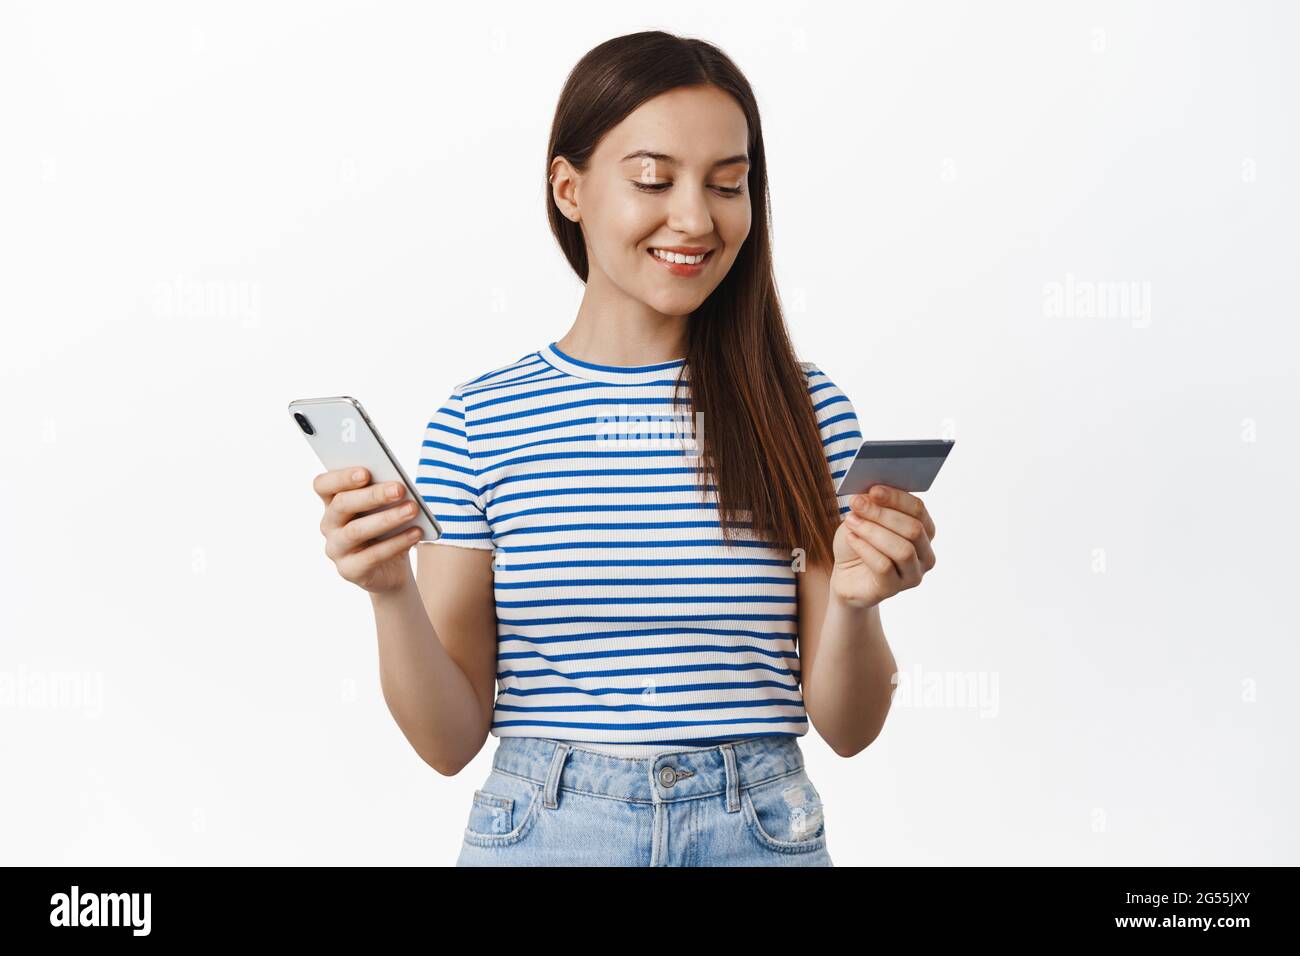 Compras en línea. Mujer joven que paga con tarjeta de crédito y teléfono móvil, sonriendo y mirando relajado, la compra smth en tienda de Internet, comprando adentro Foto de stock